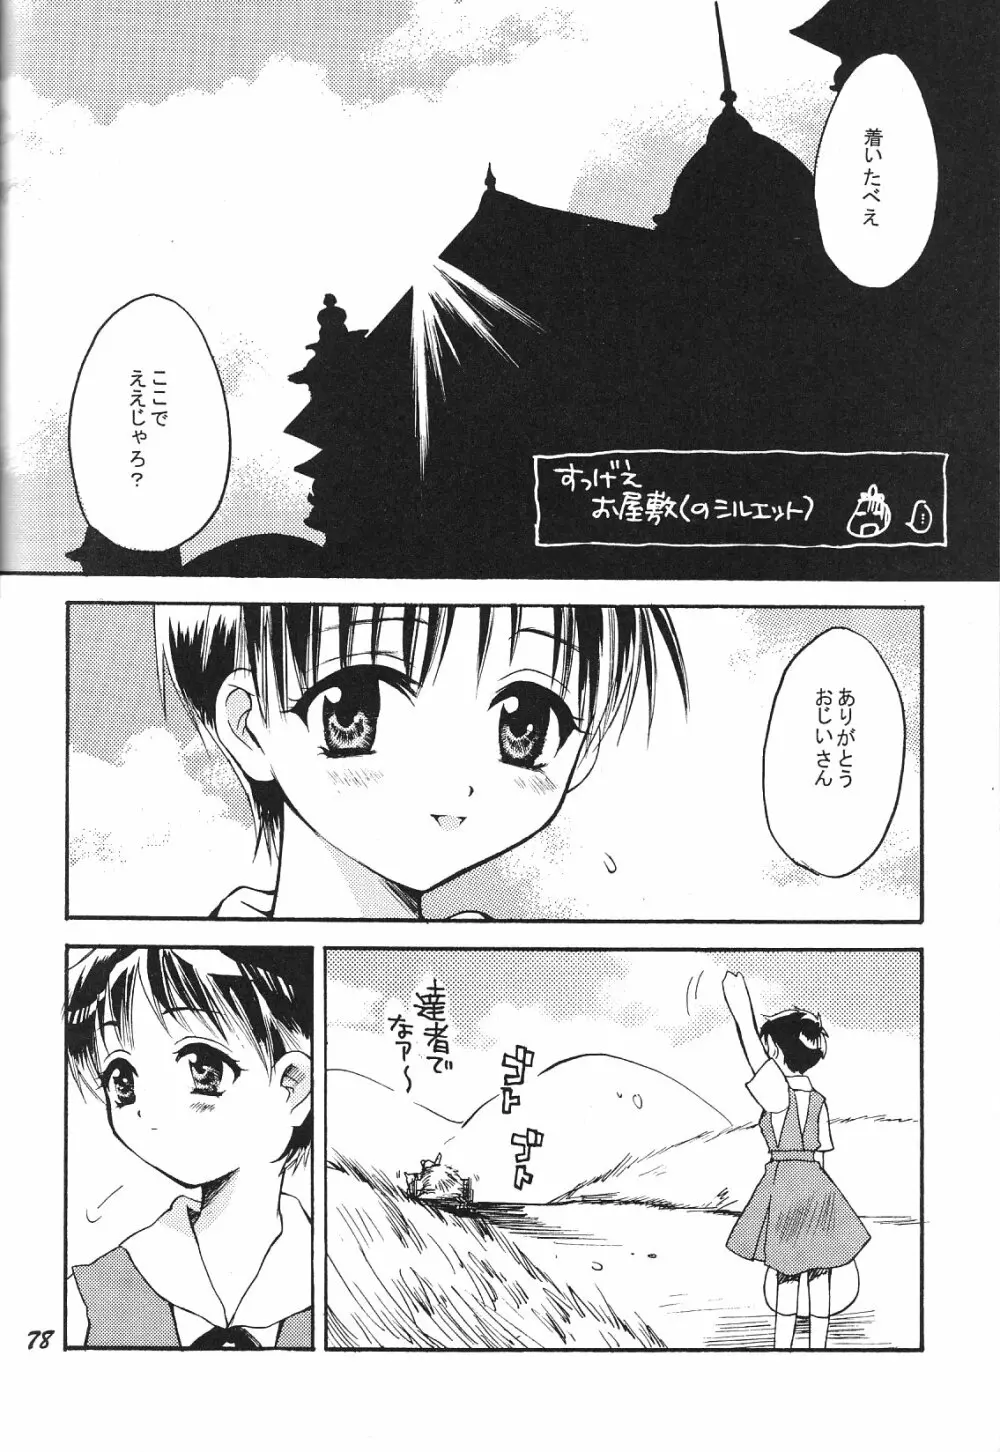 Maniac Juice 女シンジ再録集 '96-'99 - page78